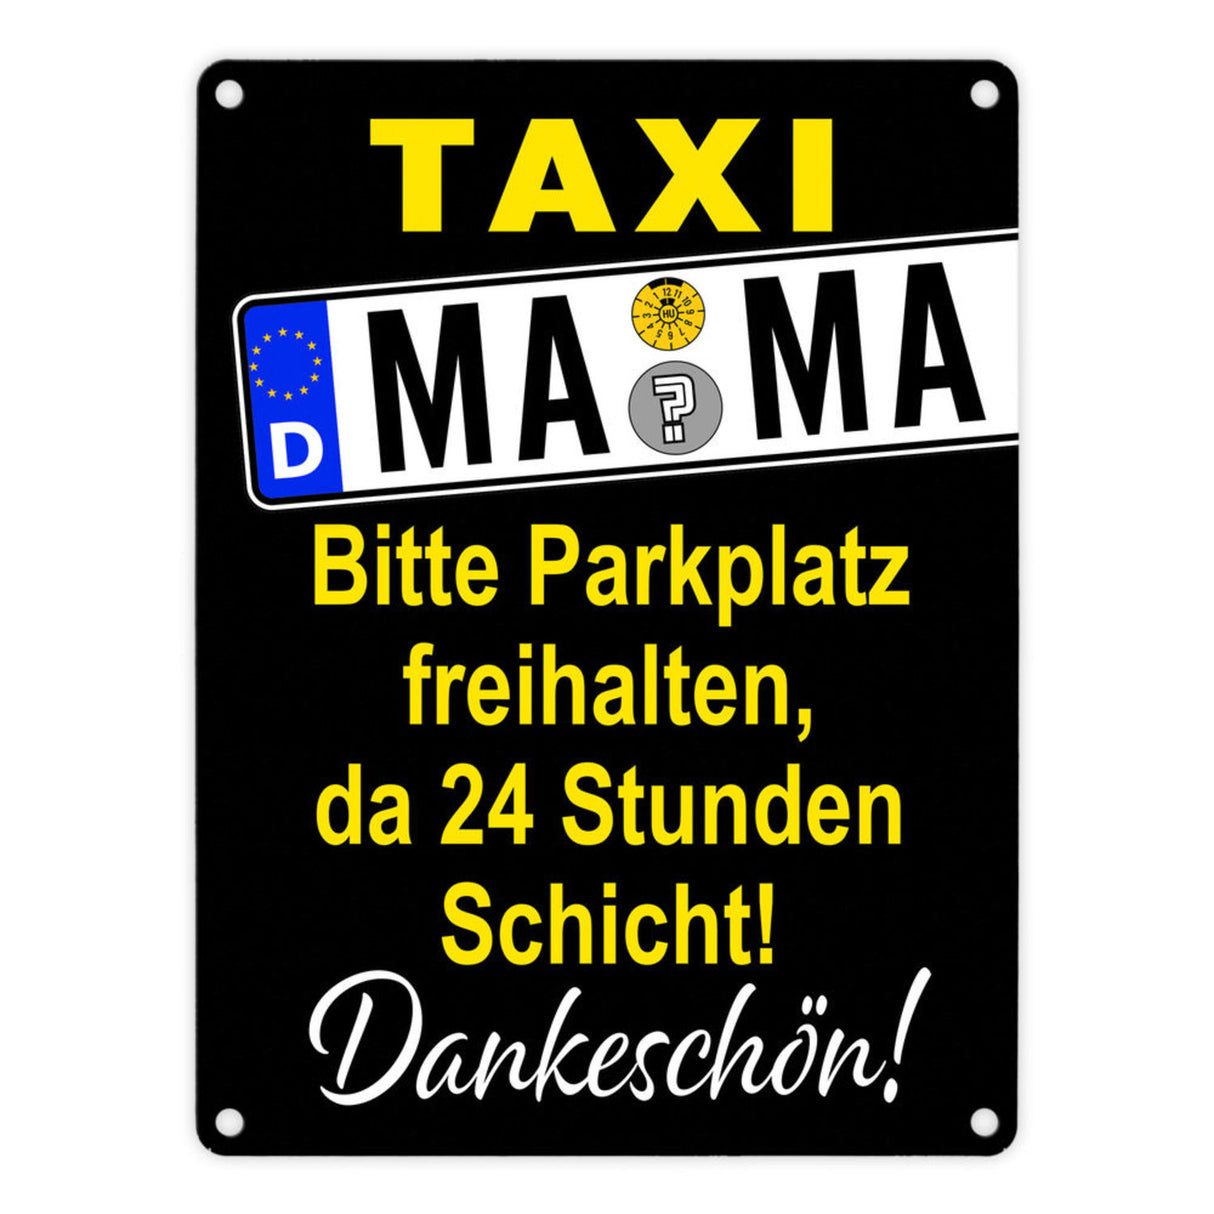 Taxi Mama Metallschild -Gelb zum Thema Mutter sein